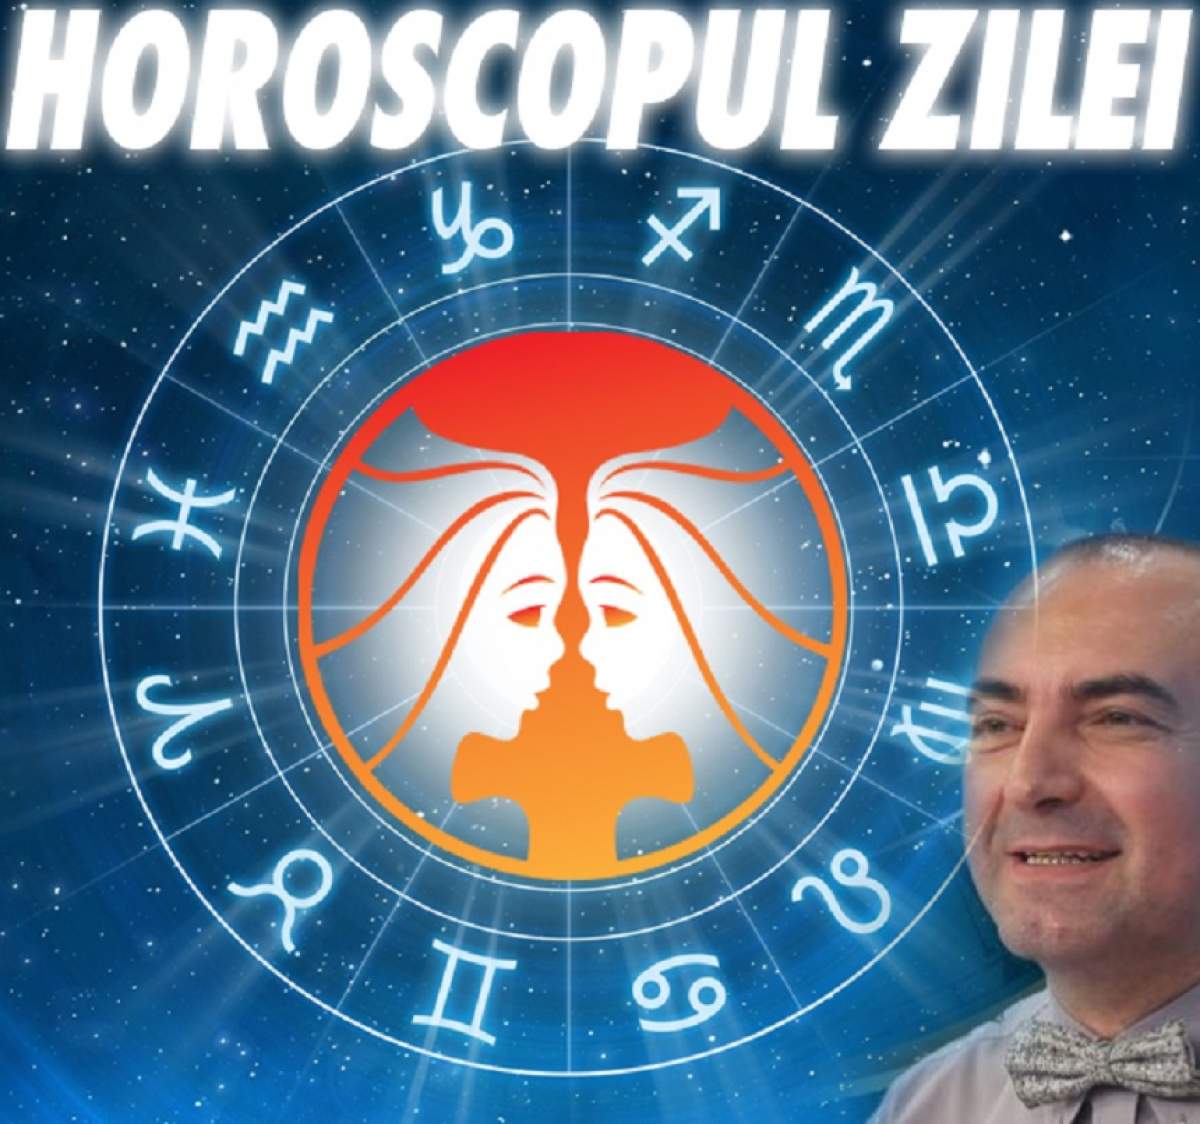 HOROSCOPUL ZILEI - 26 MAI: O zi importantă pentru Gemeni! Este vremea unei hotărâri decisive